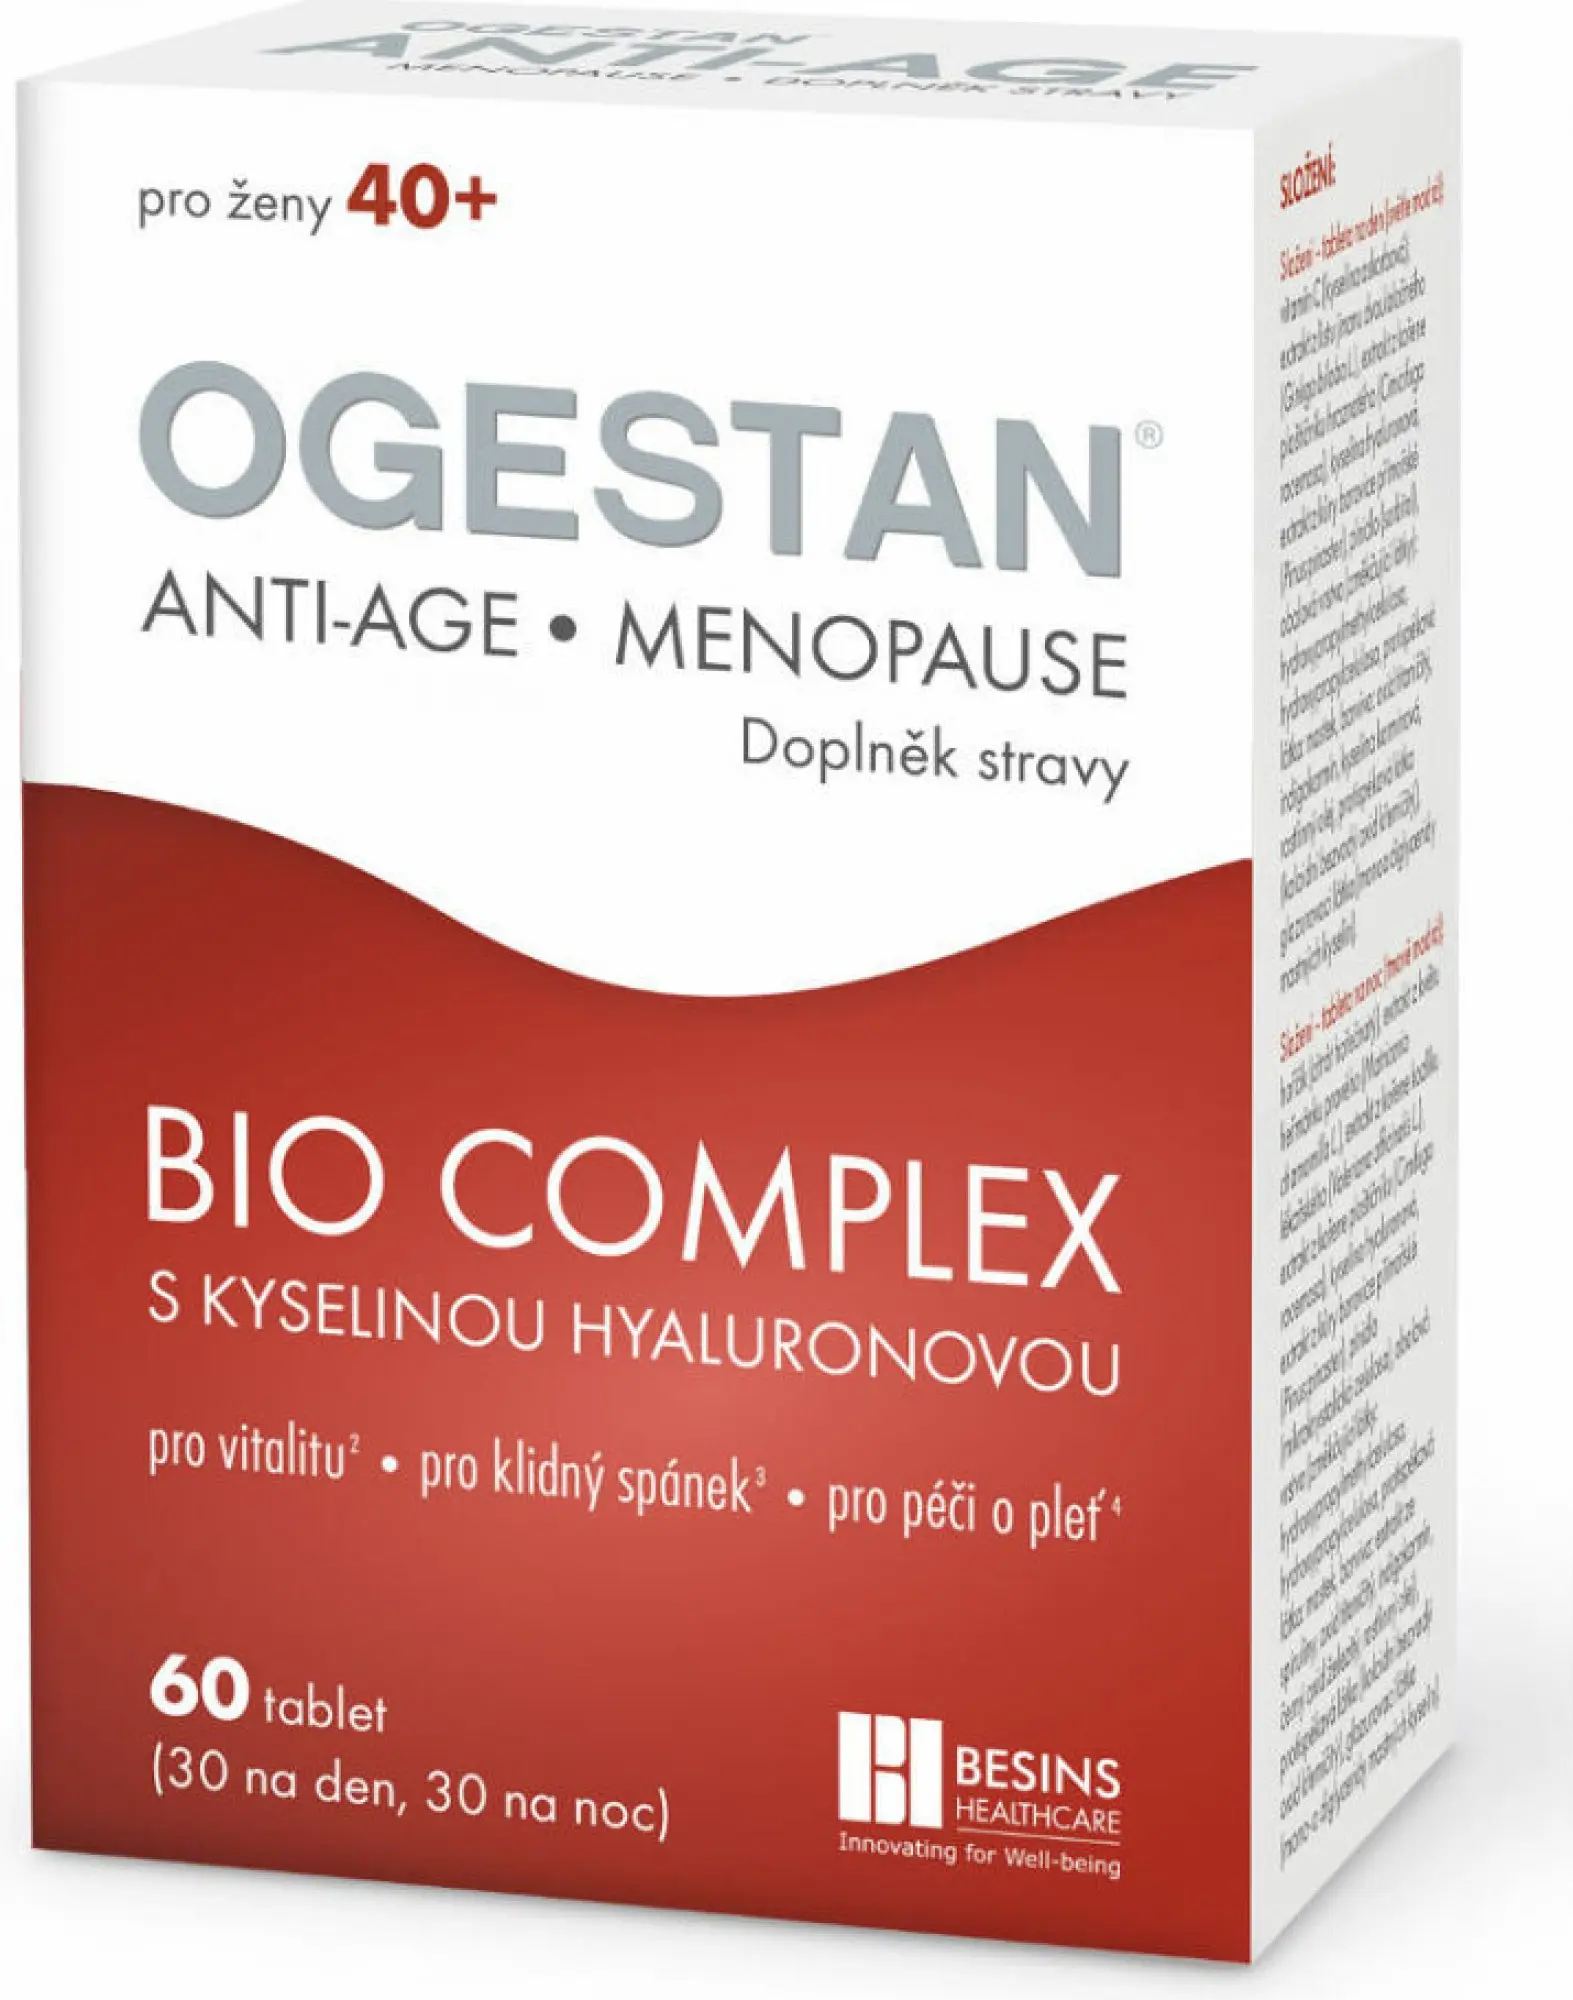 Ogestan Anti-Age Menopause 2 x 30 tablet